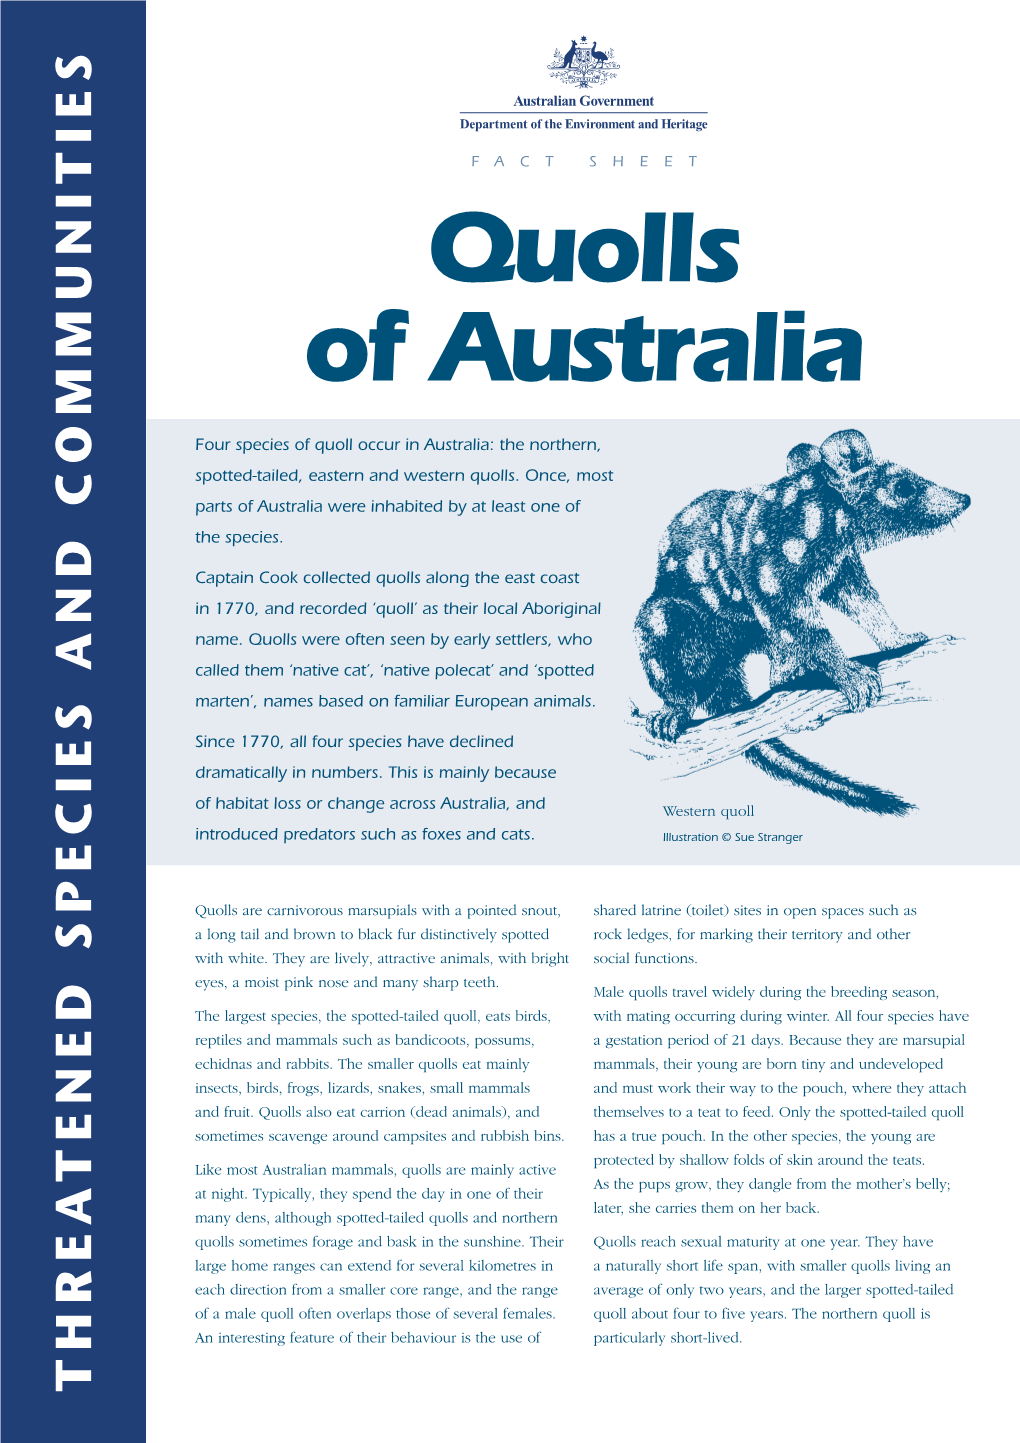 Quolls of Australia